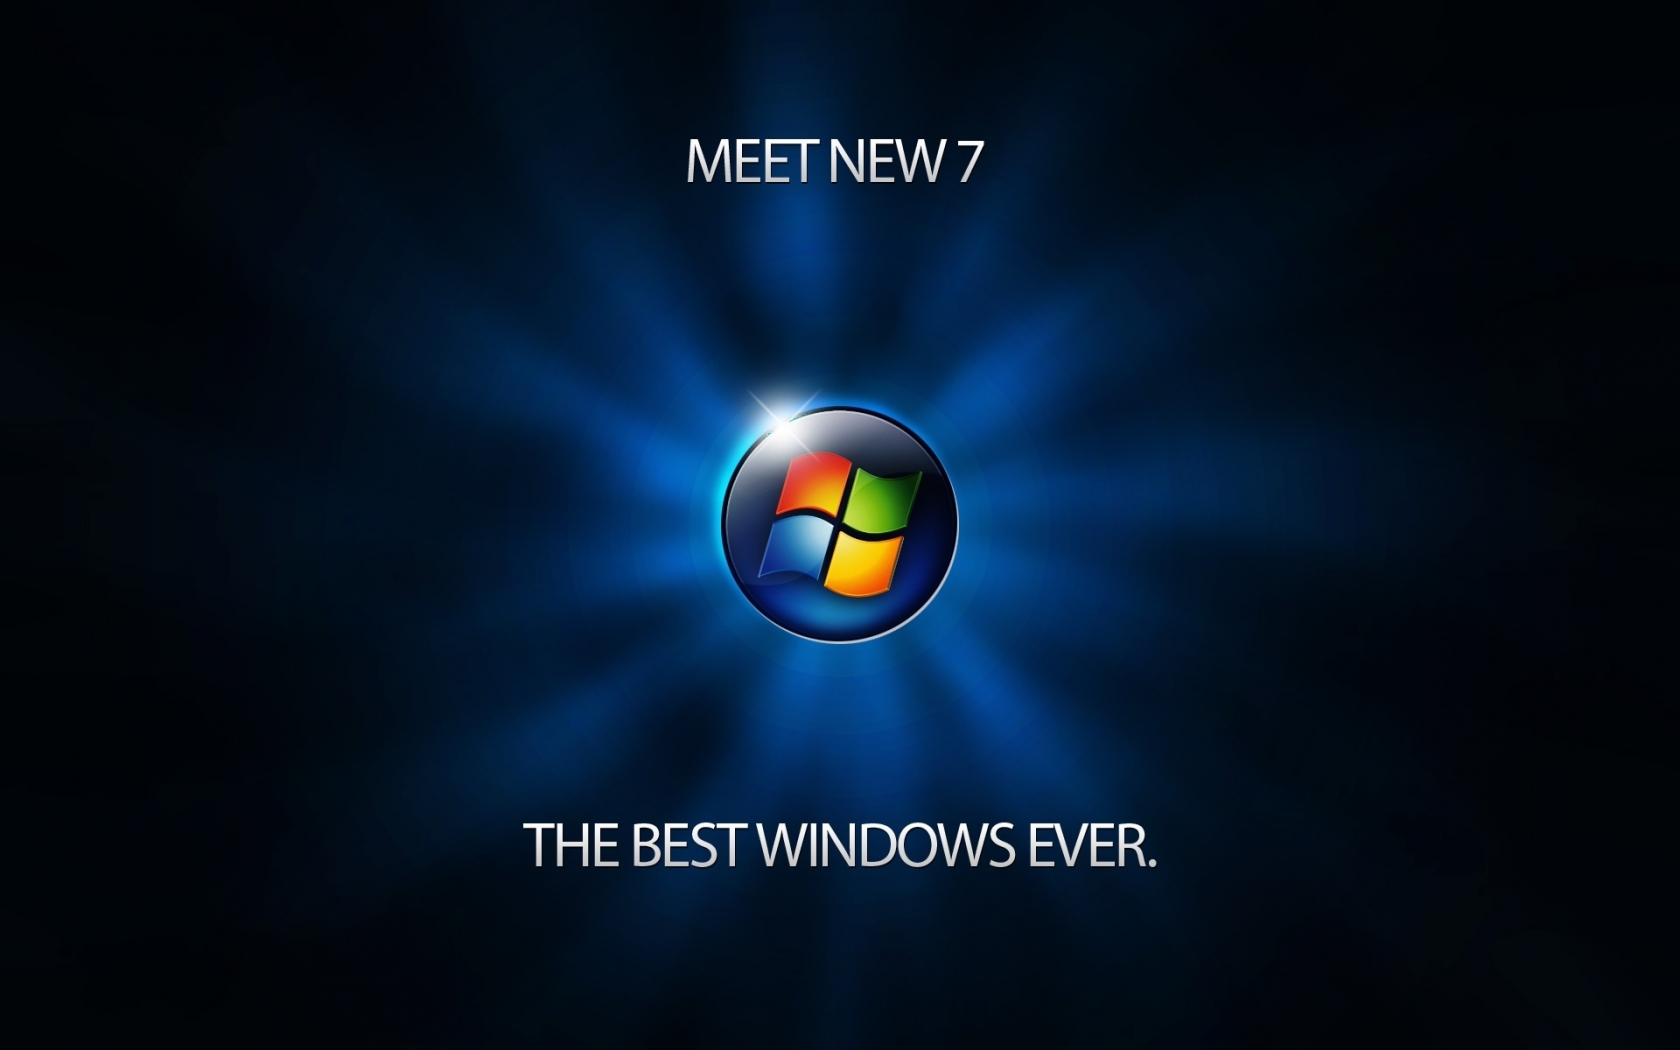 Meet Windows 7 for 1680 x 1050 widescreen resolution